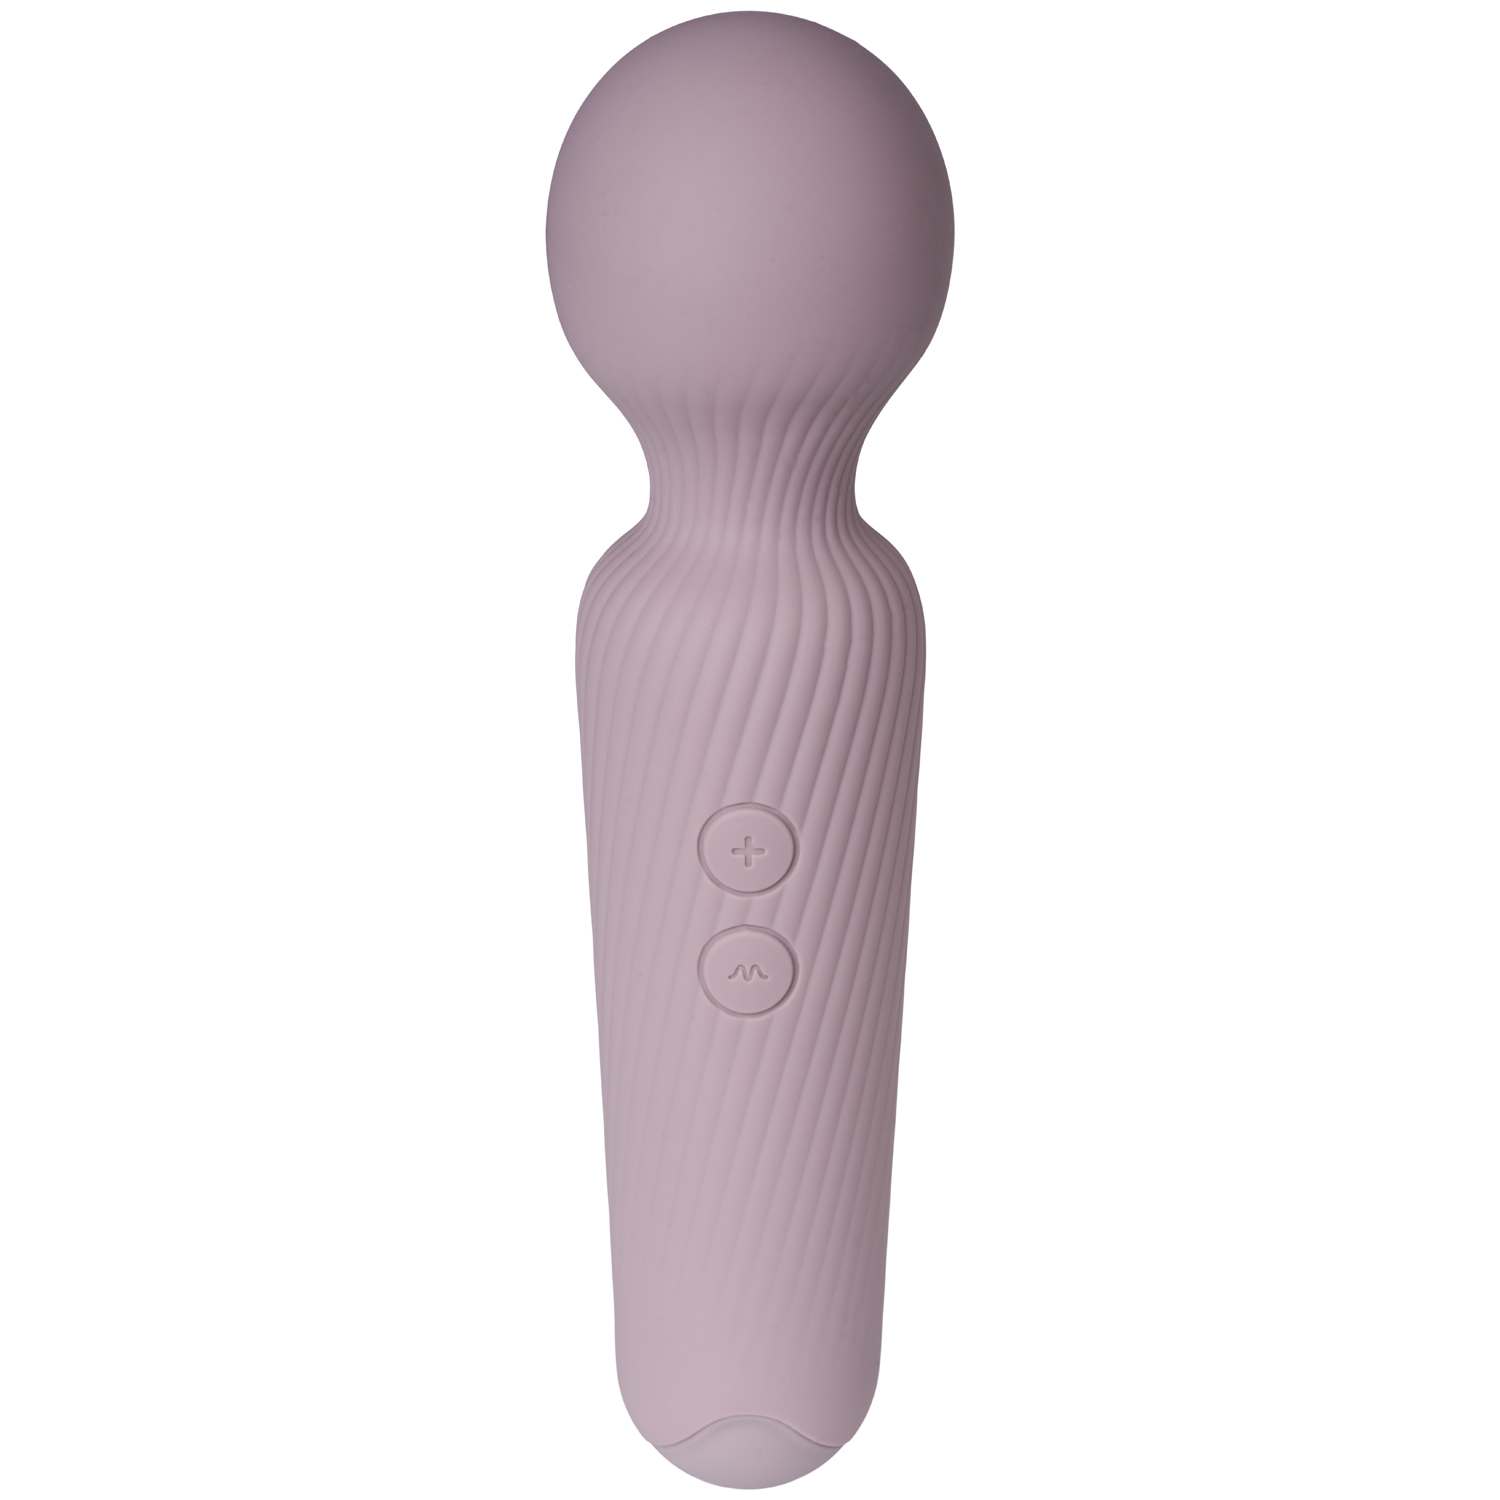 Amaysin Blissy Uppladdningsbar Wand Vibrator - Ljusbrun | Vibratorer//Favoriter//REA för kvinnor//Kvinnor//Laddningsbar Vibrator//REA//Amaysin//Klitorisvibrator//Hon | Intimast